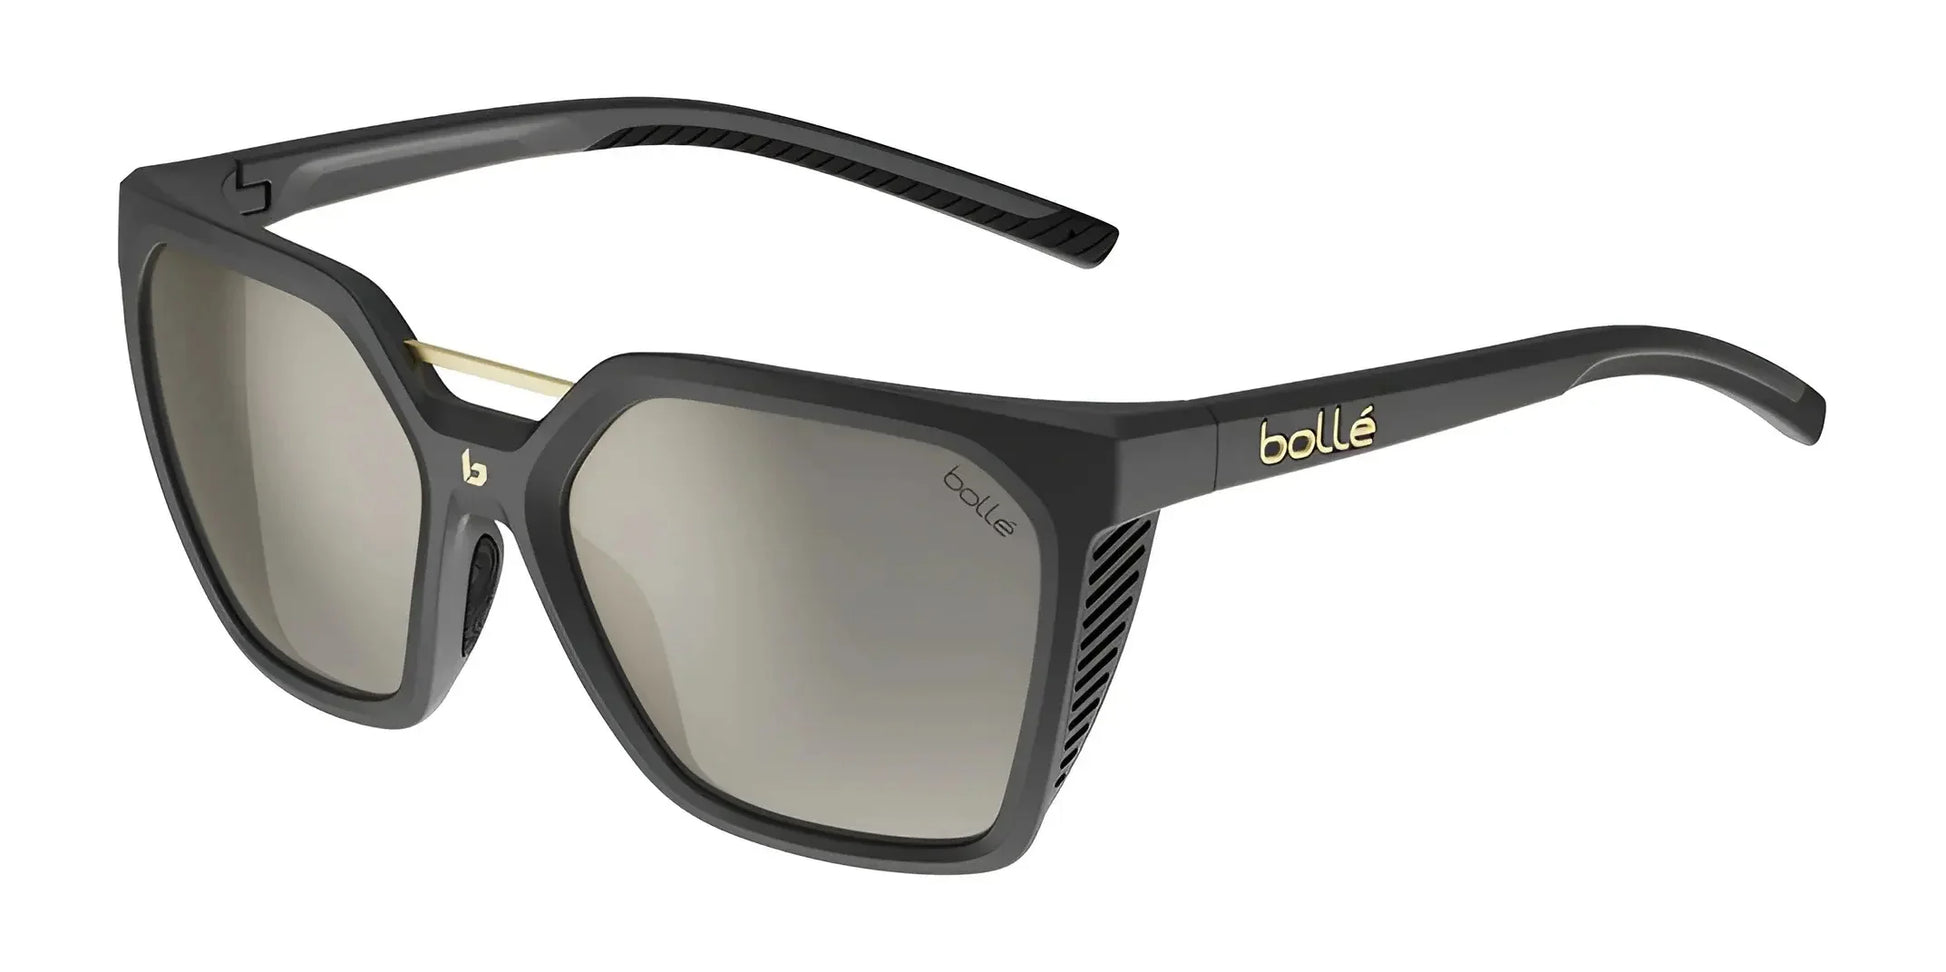 Bolle ASTERIA Sunglasses Black Matte / TNS Gold